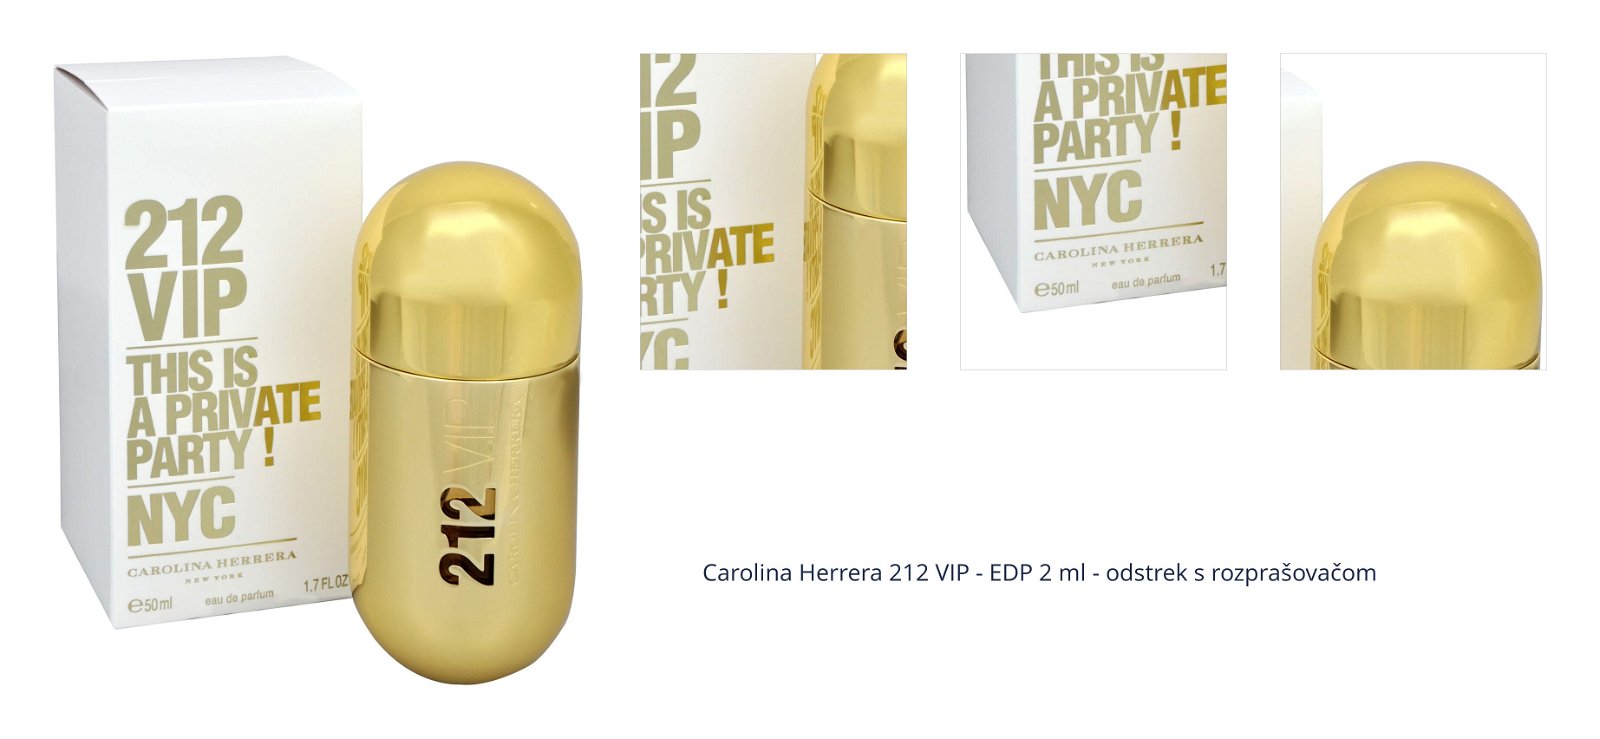 Carolina Herrera 212 VIP - EDP 2 ml - odstrek s rozprašovačom 1